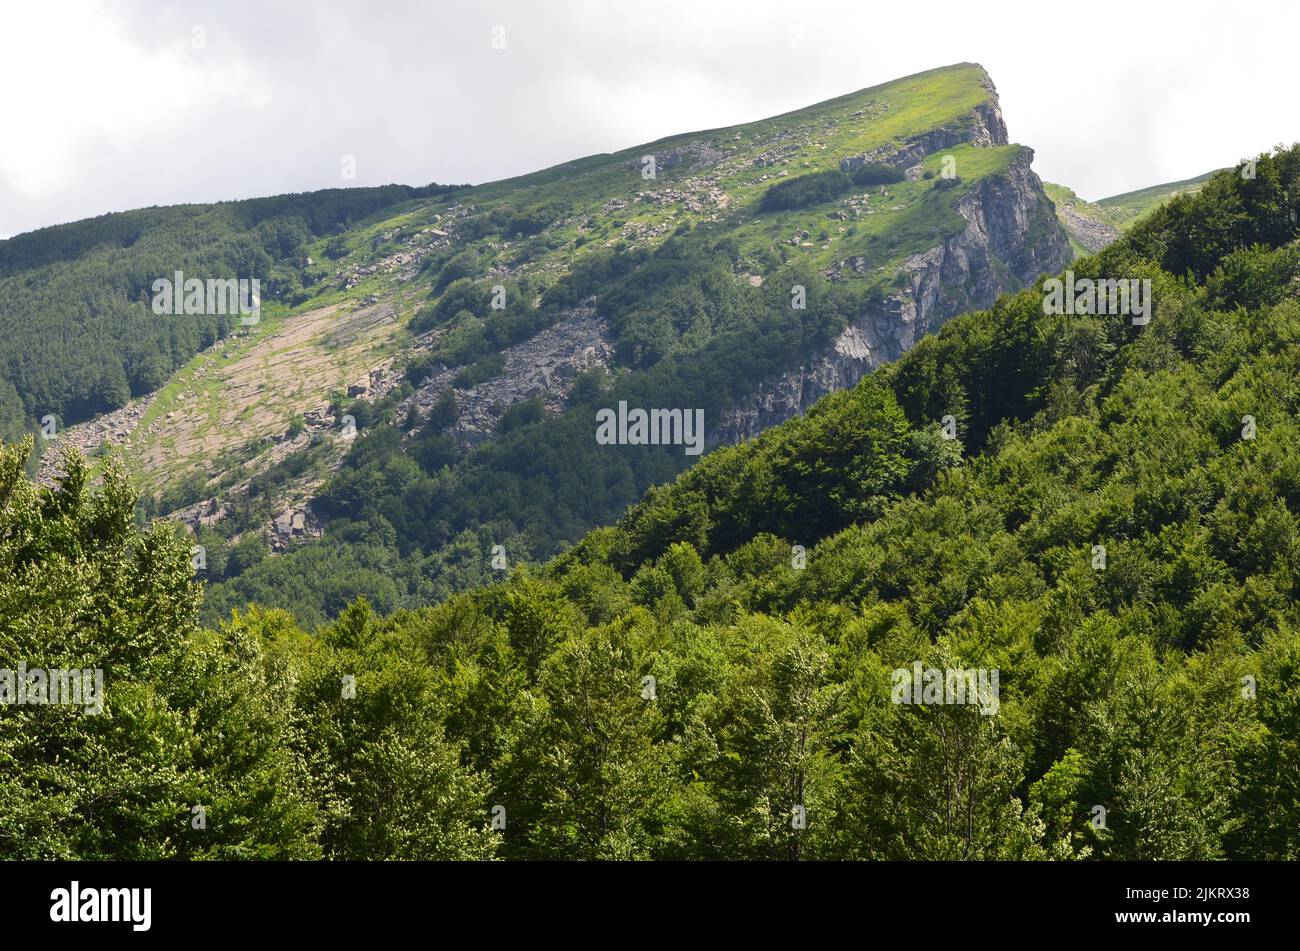 Parco Nazionale dell'Appennino Tosco-Emiliano, un parque nacional montañoso y boscoso en la frontera entre Toscana y Emilia-Romaña Foto de stock